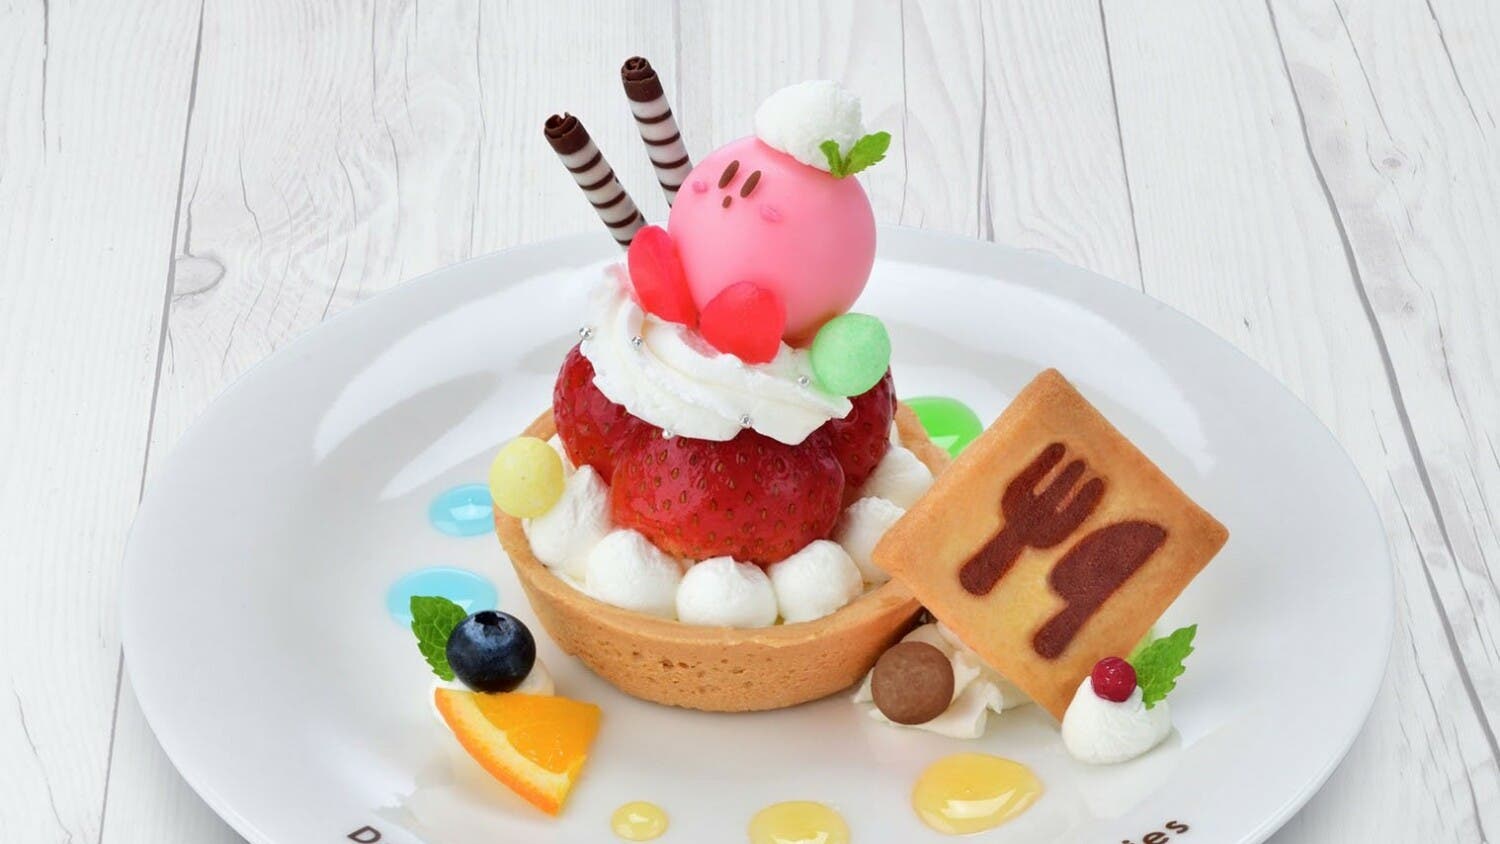 Kirby Café añade este plato inspirado en Kirby’s Dream Buffet